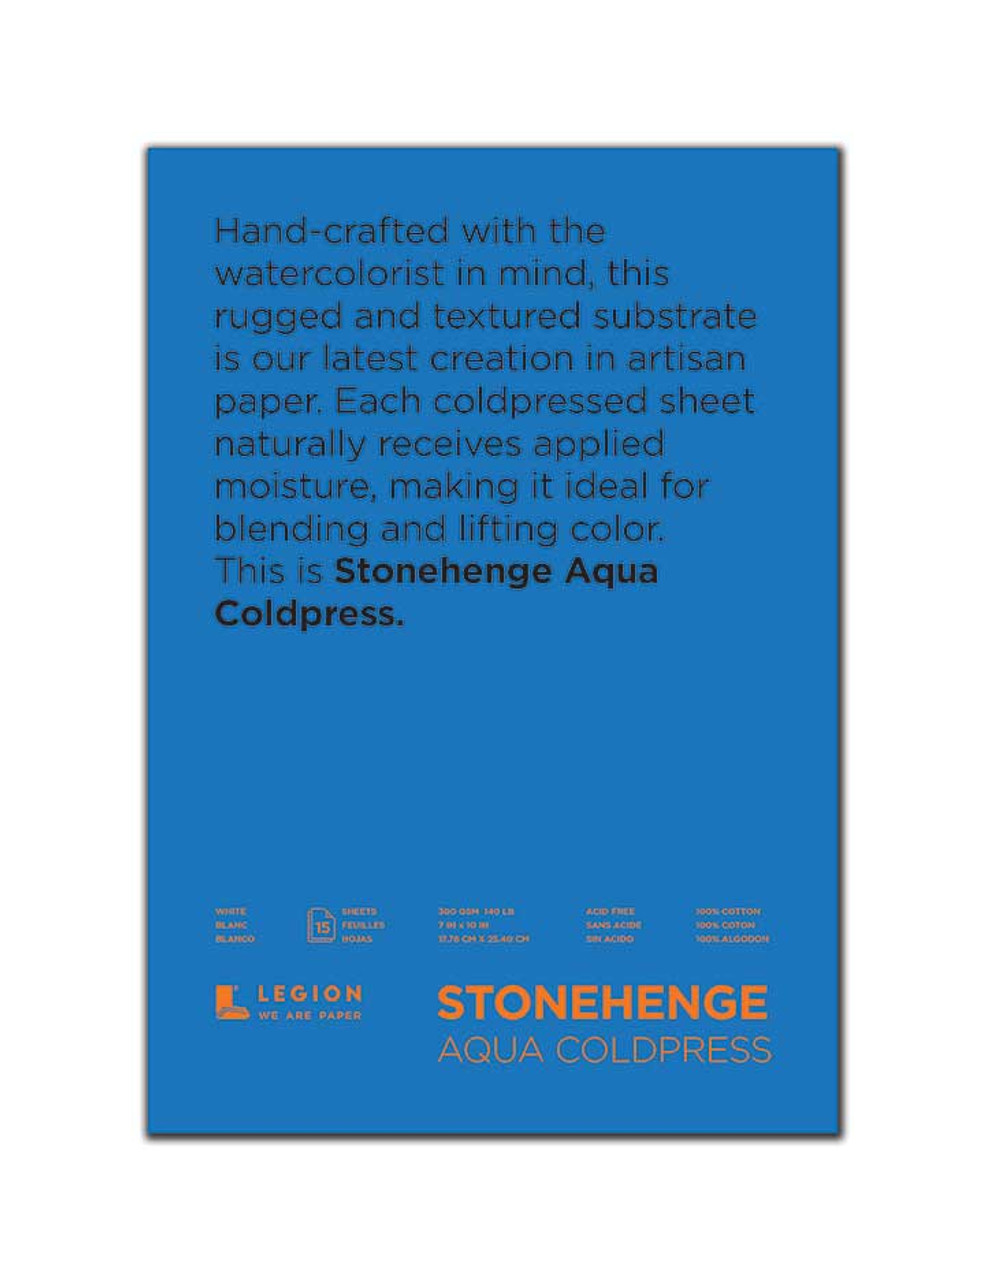 Legion Stonehenge Aqua Hot Press Watercolor Paper